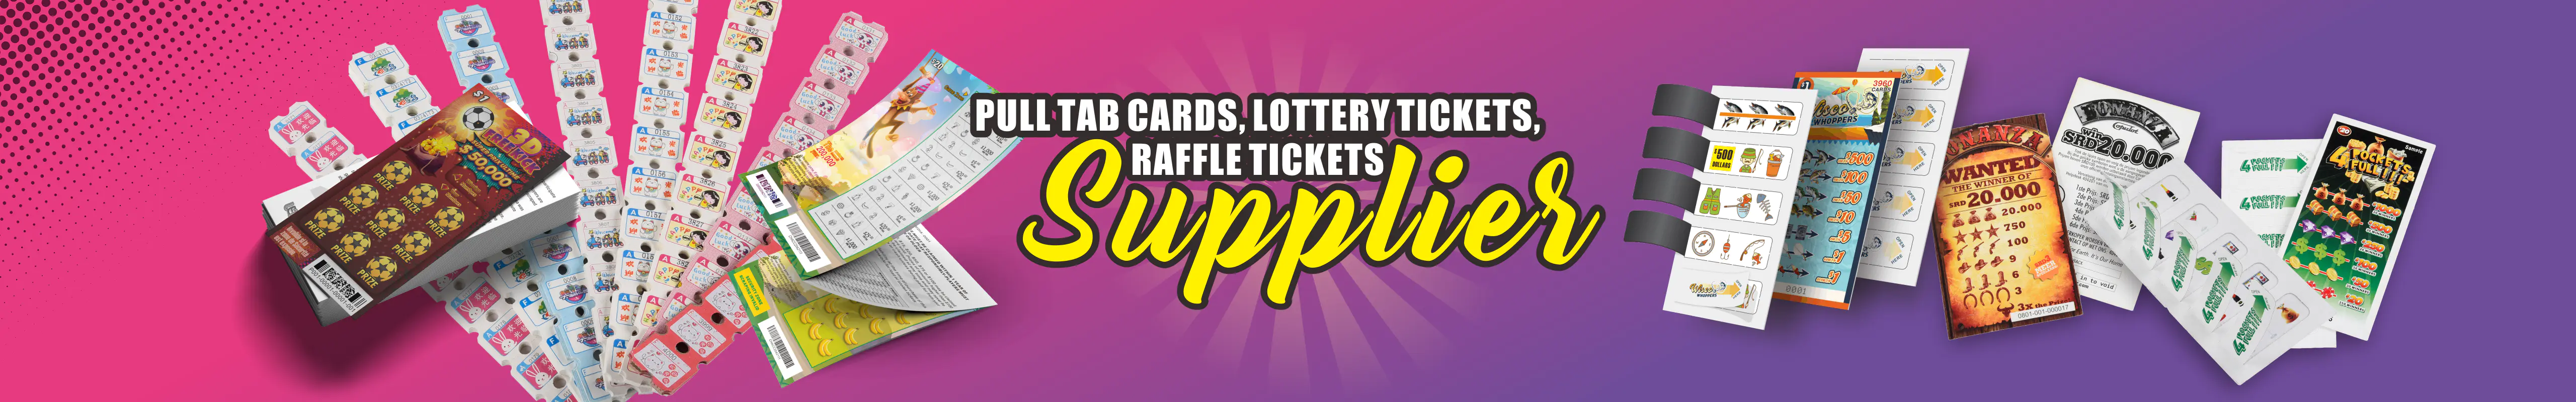 Tarjeta rasca y gana | Boletos de lotería | Ticket Pull Tab | Tarjetas de sello